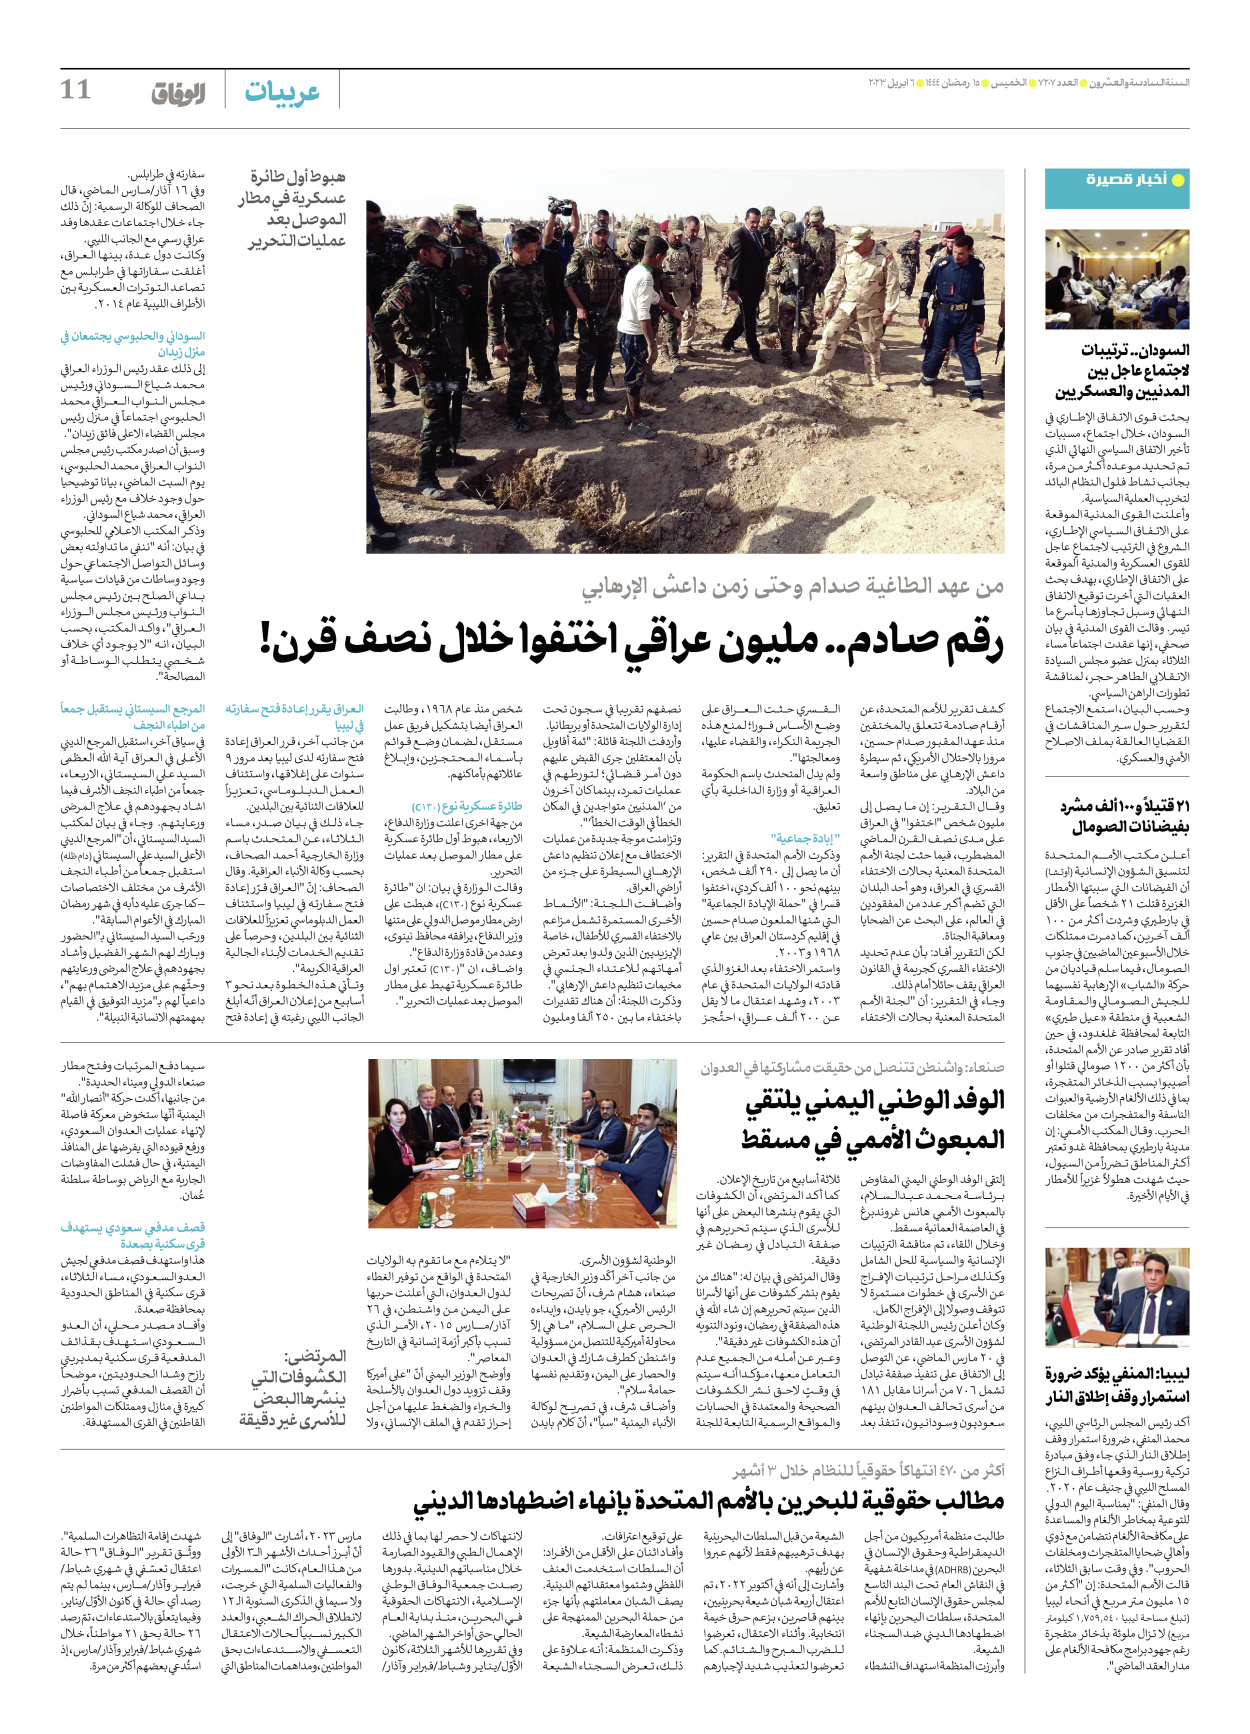 صحیفة ایران الدولیة الوفاق - العدد سبعة آلاف ومائتان وسبعة - ٠٦ أبريل ٢٠٢٣ - الصفحة ۱۱